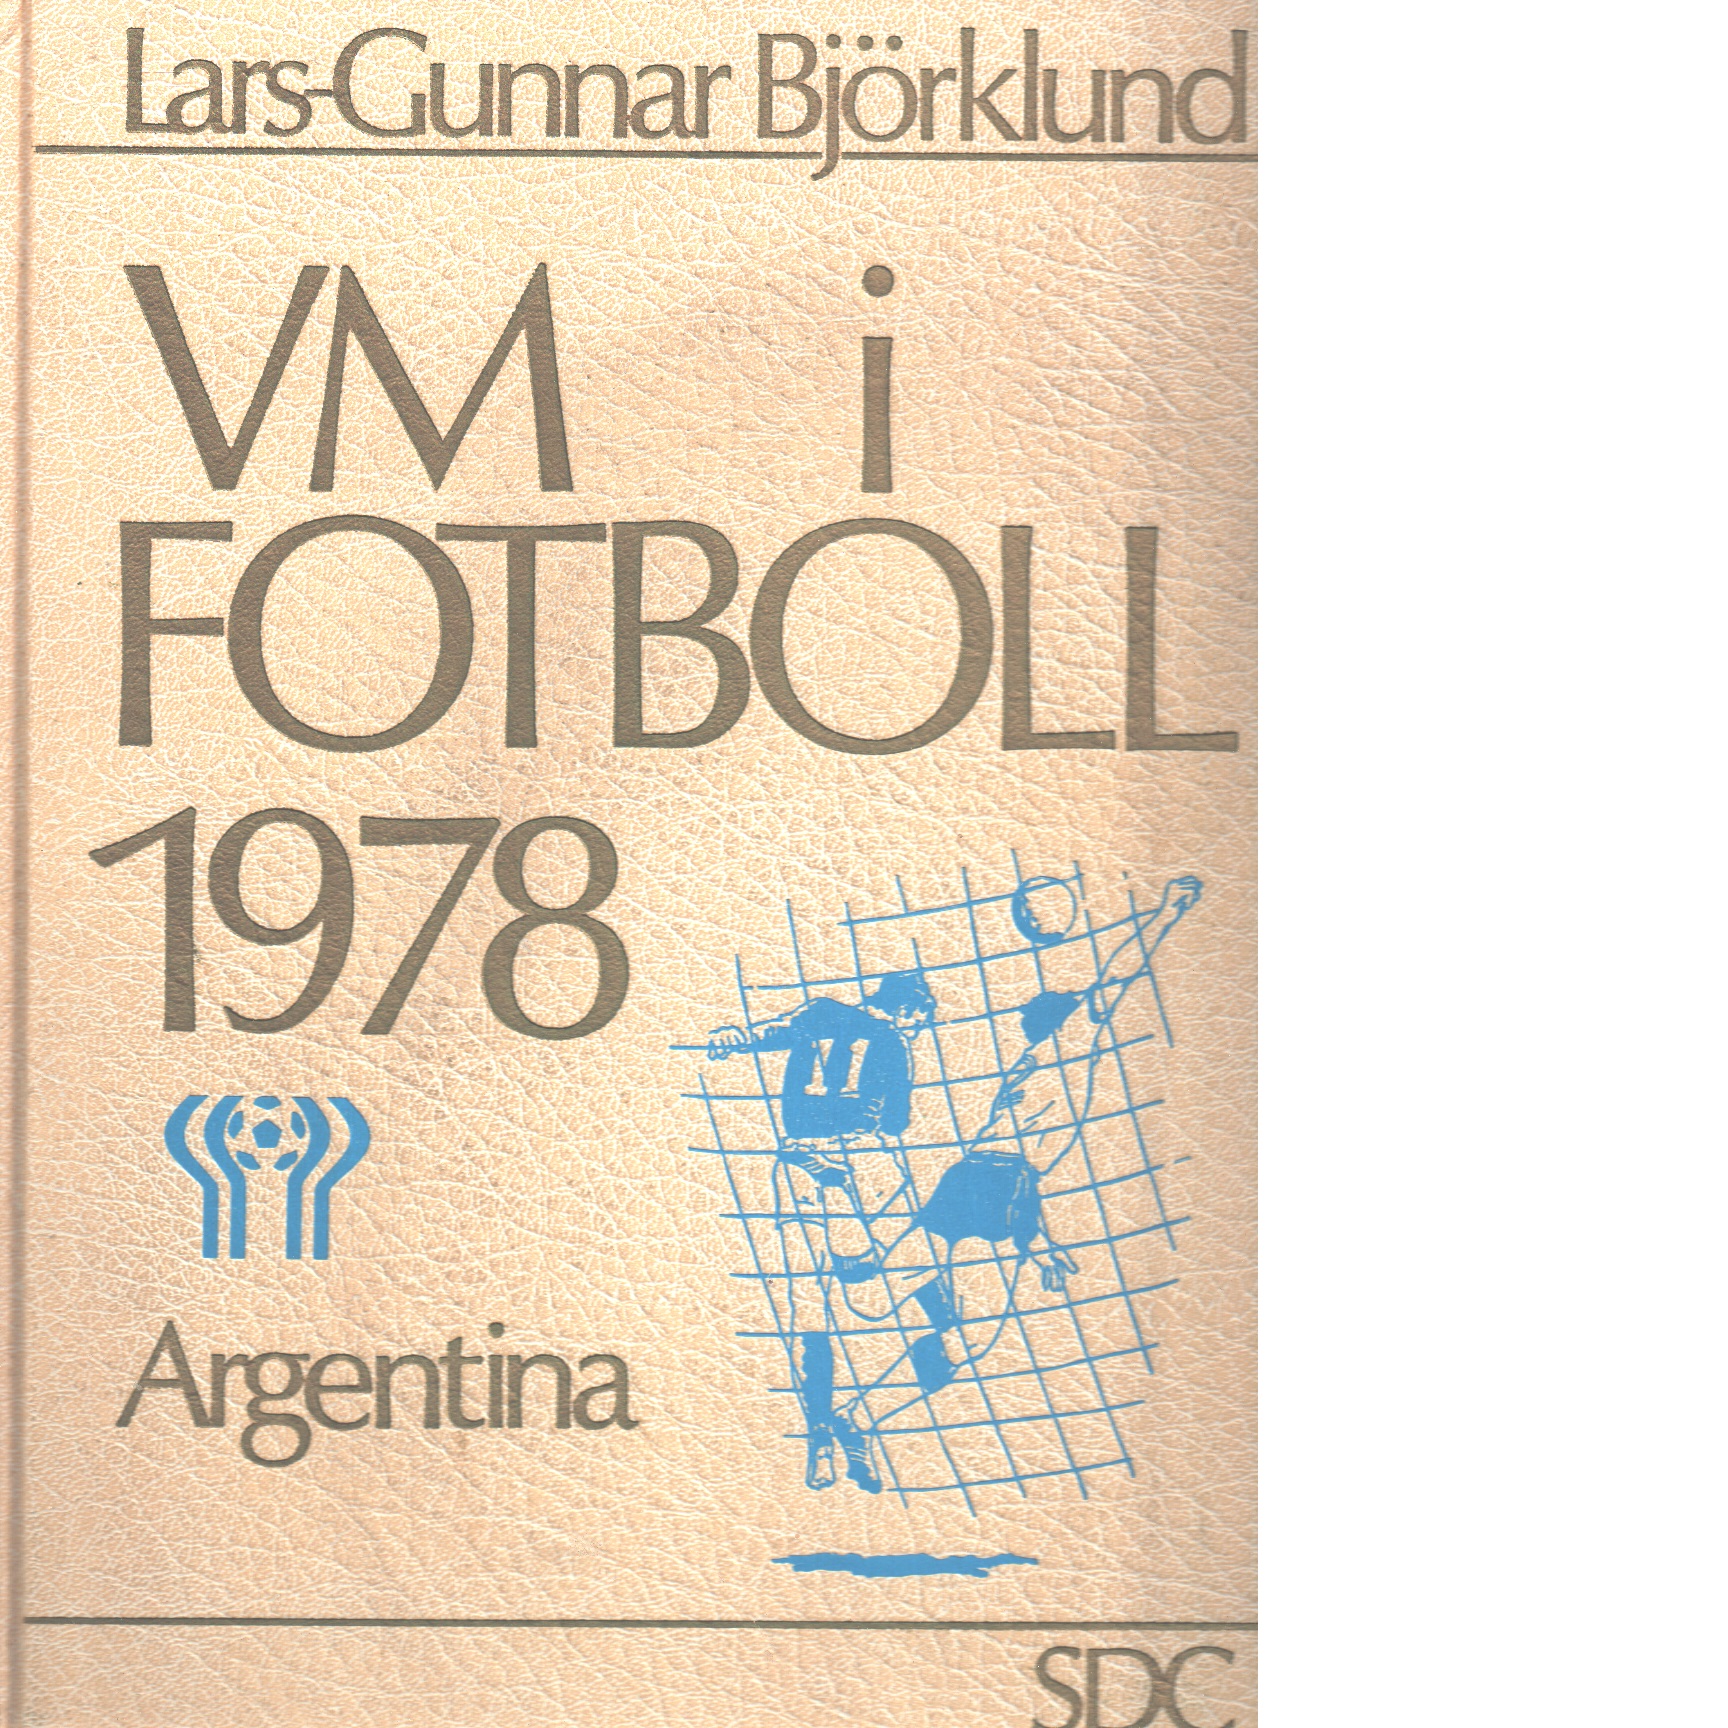 Vm i fotboll 1978 Argentina - Red.